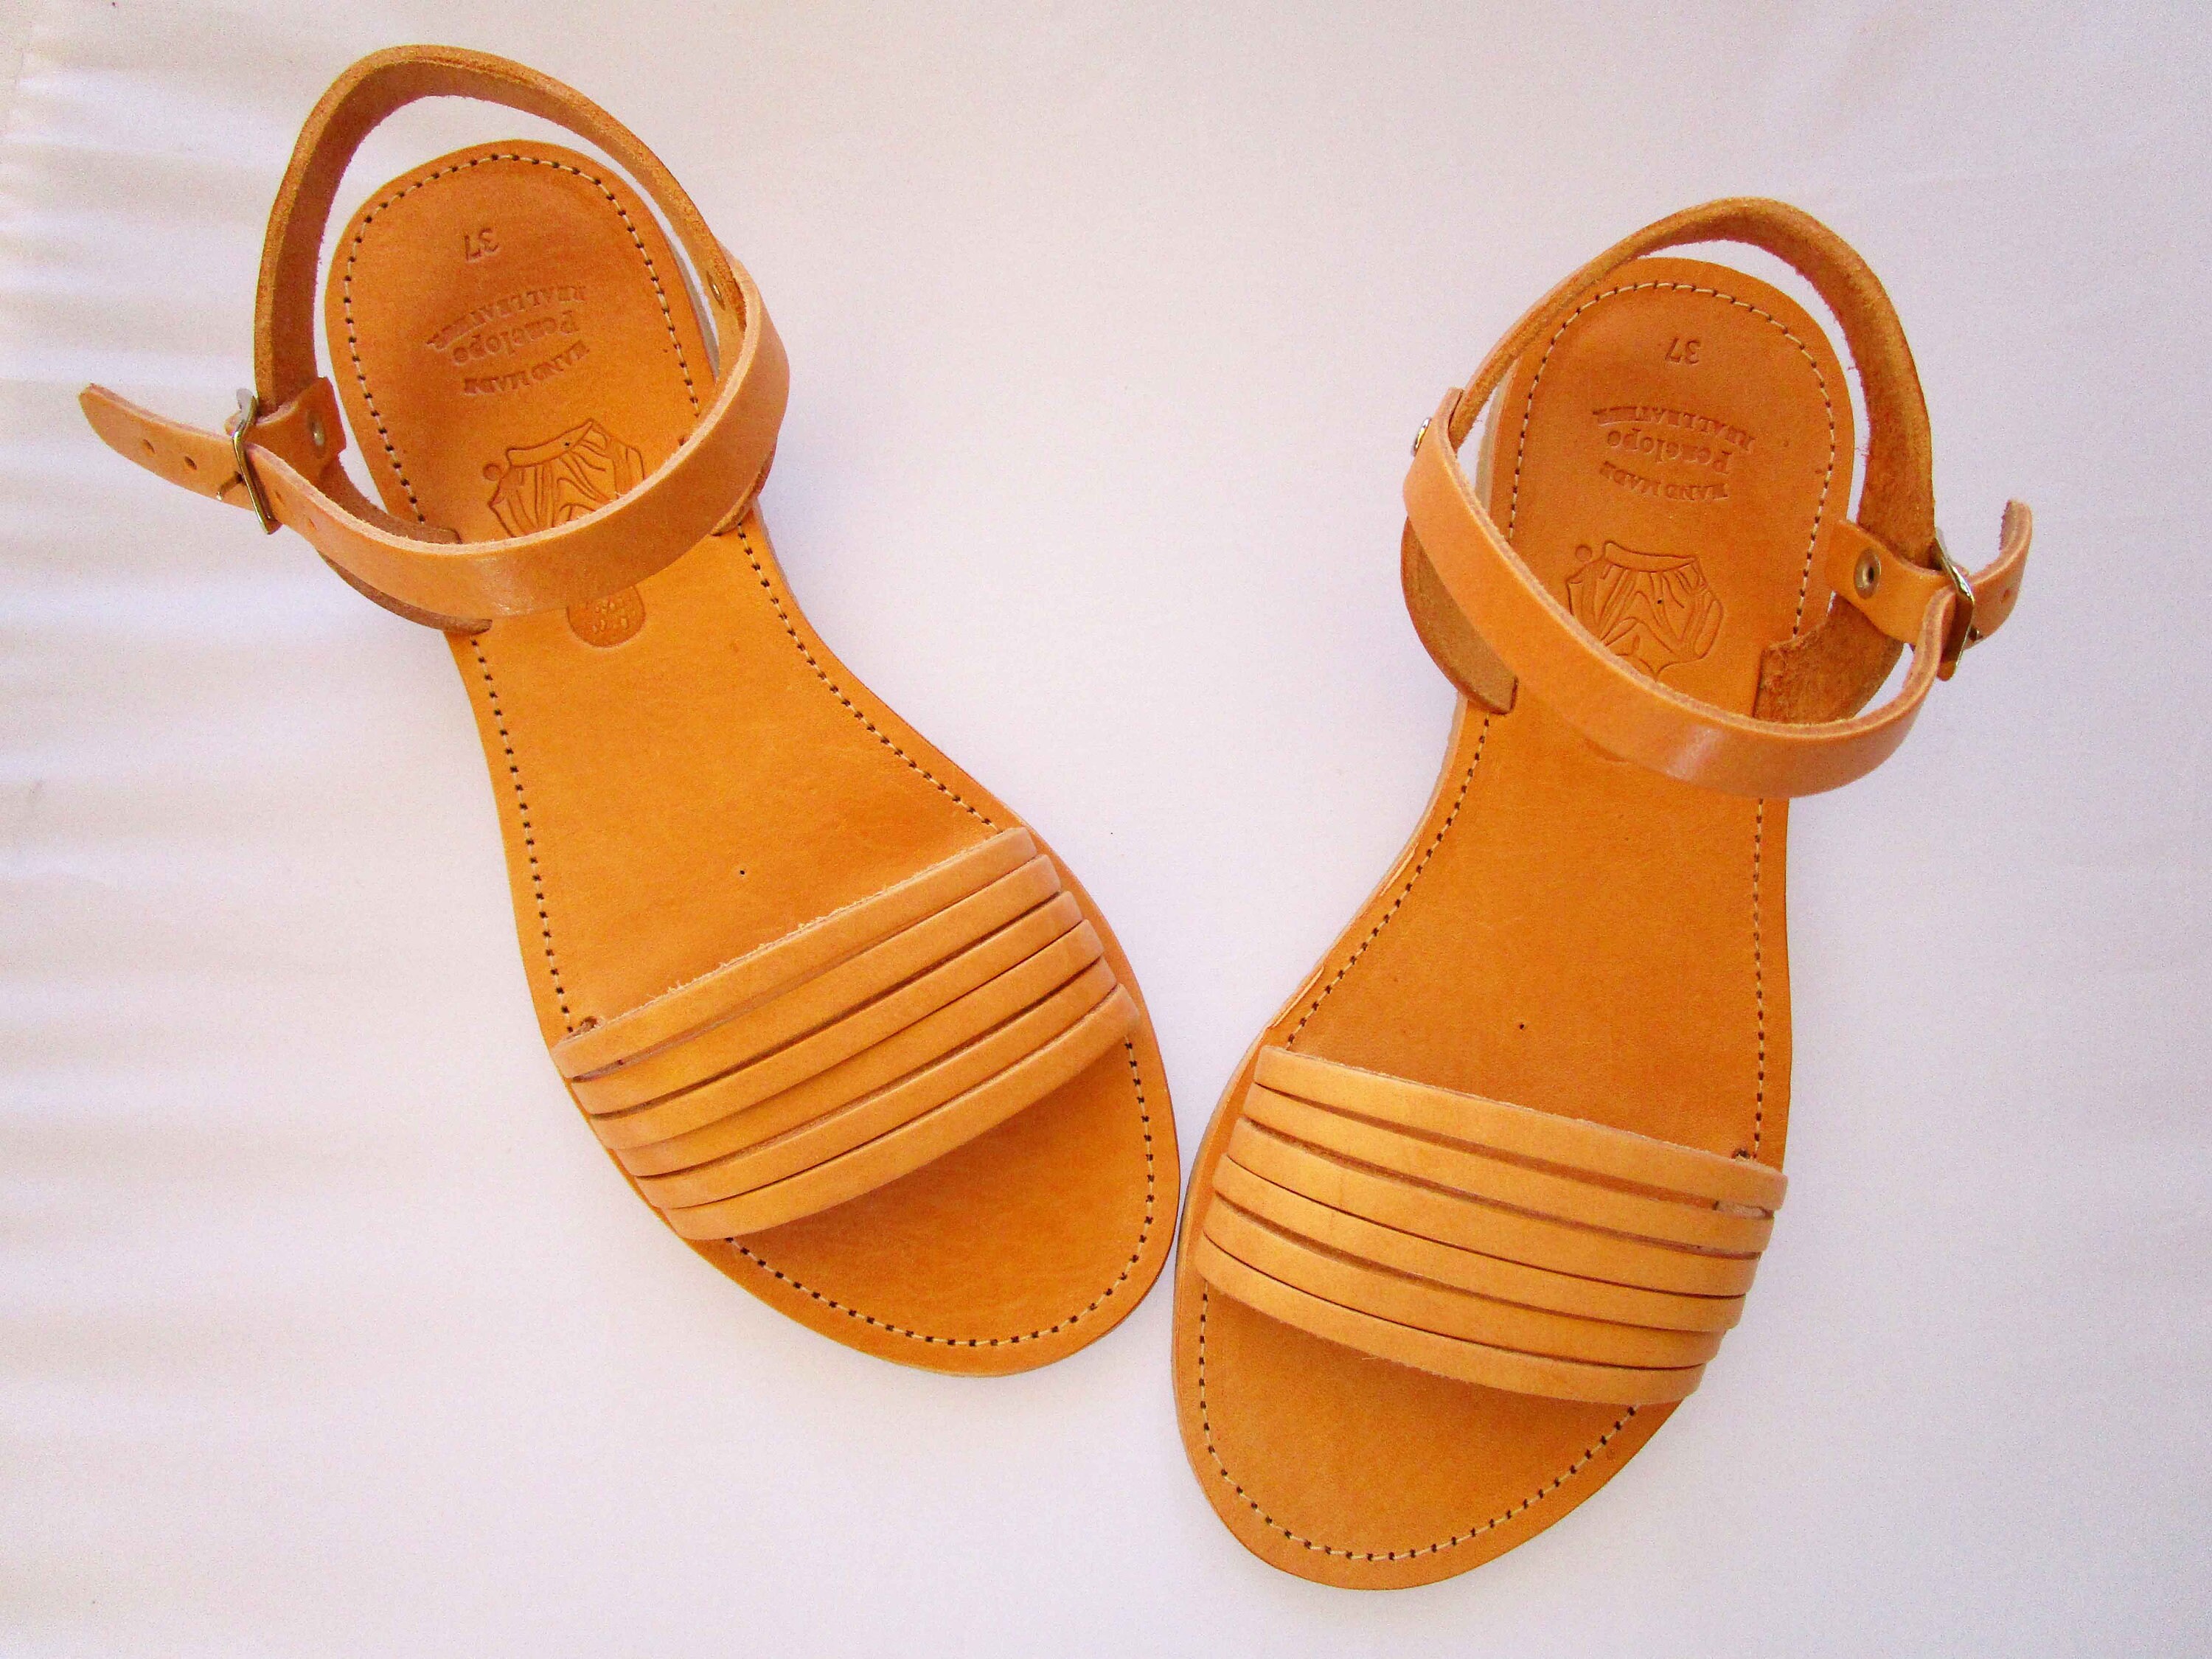 Sandals Greek sandals Leather sandals Gladiator sandals | Etsy